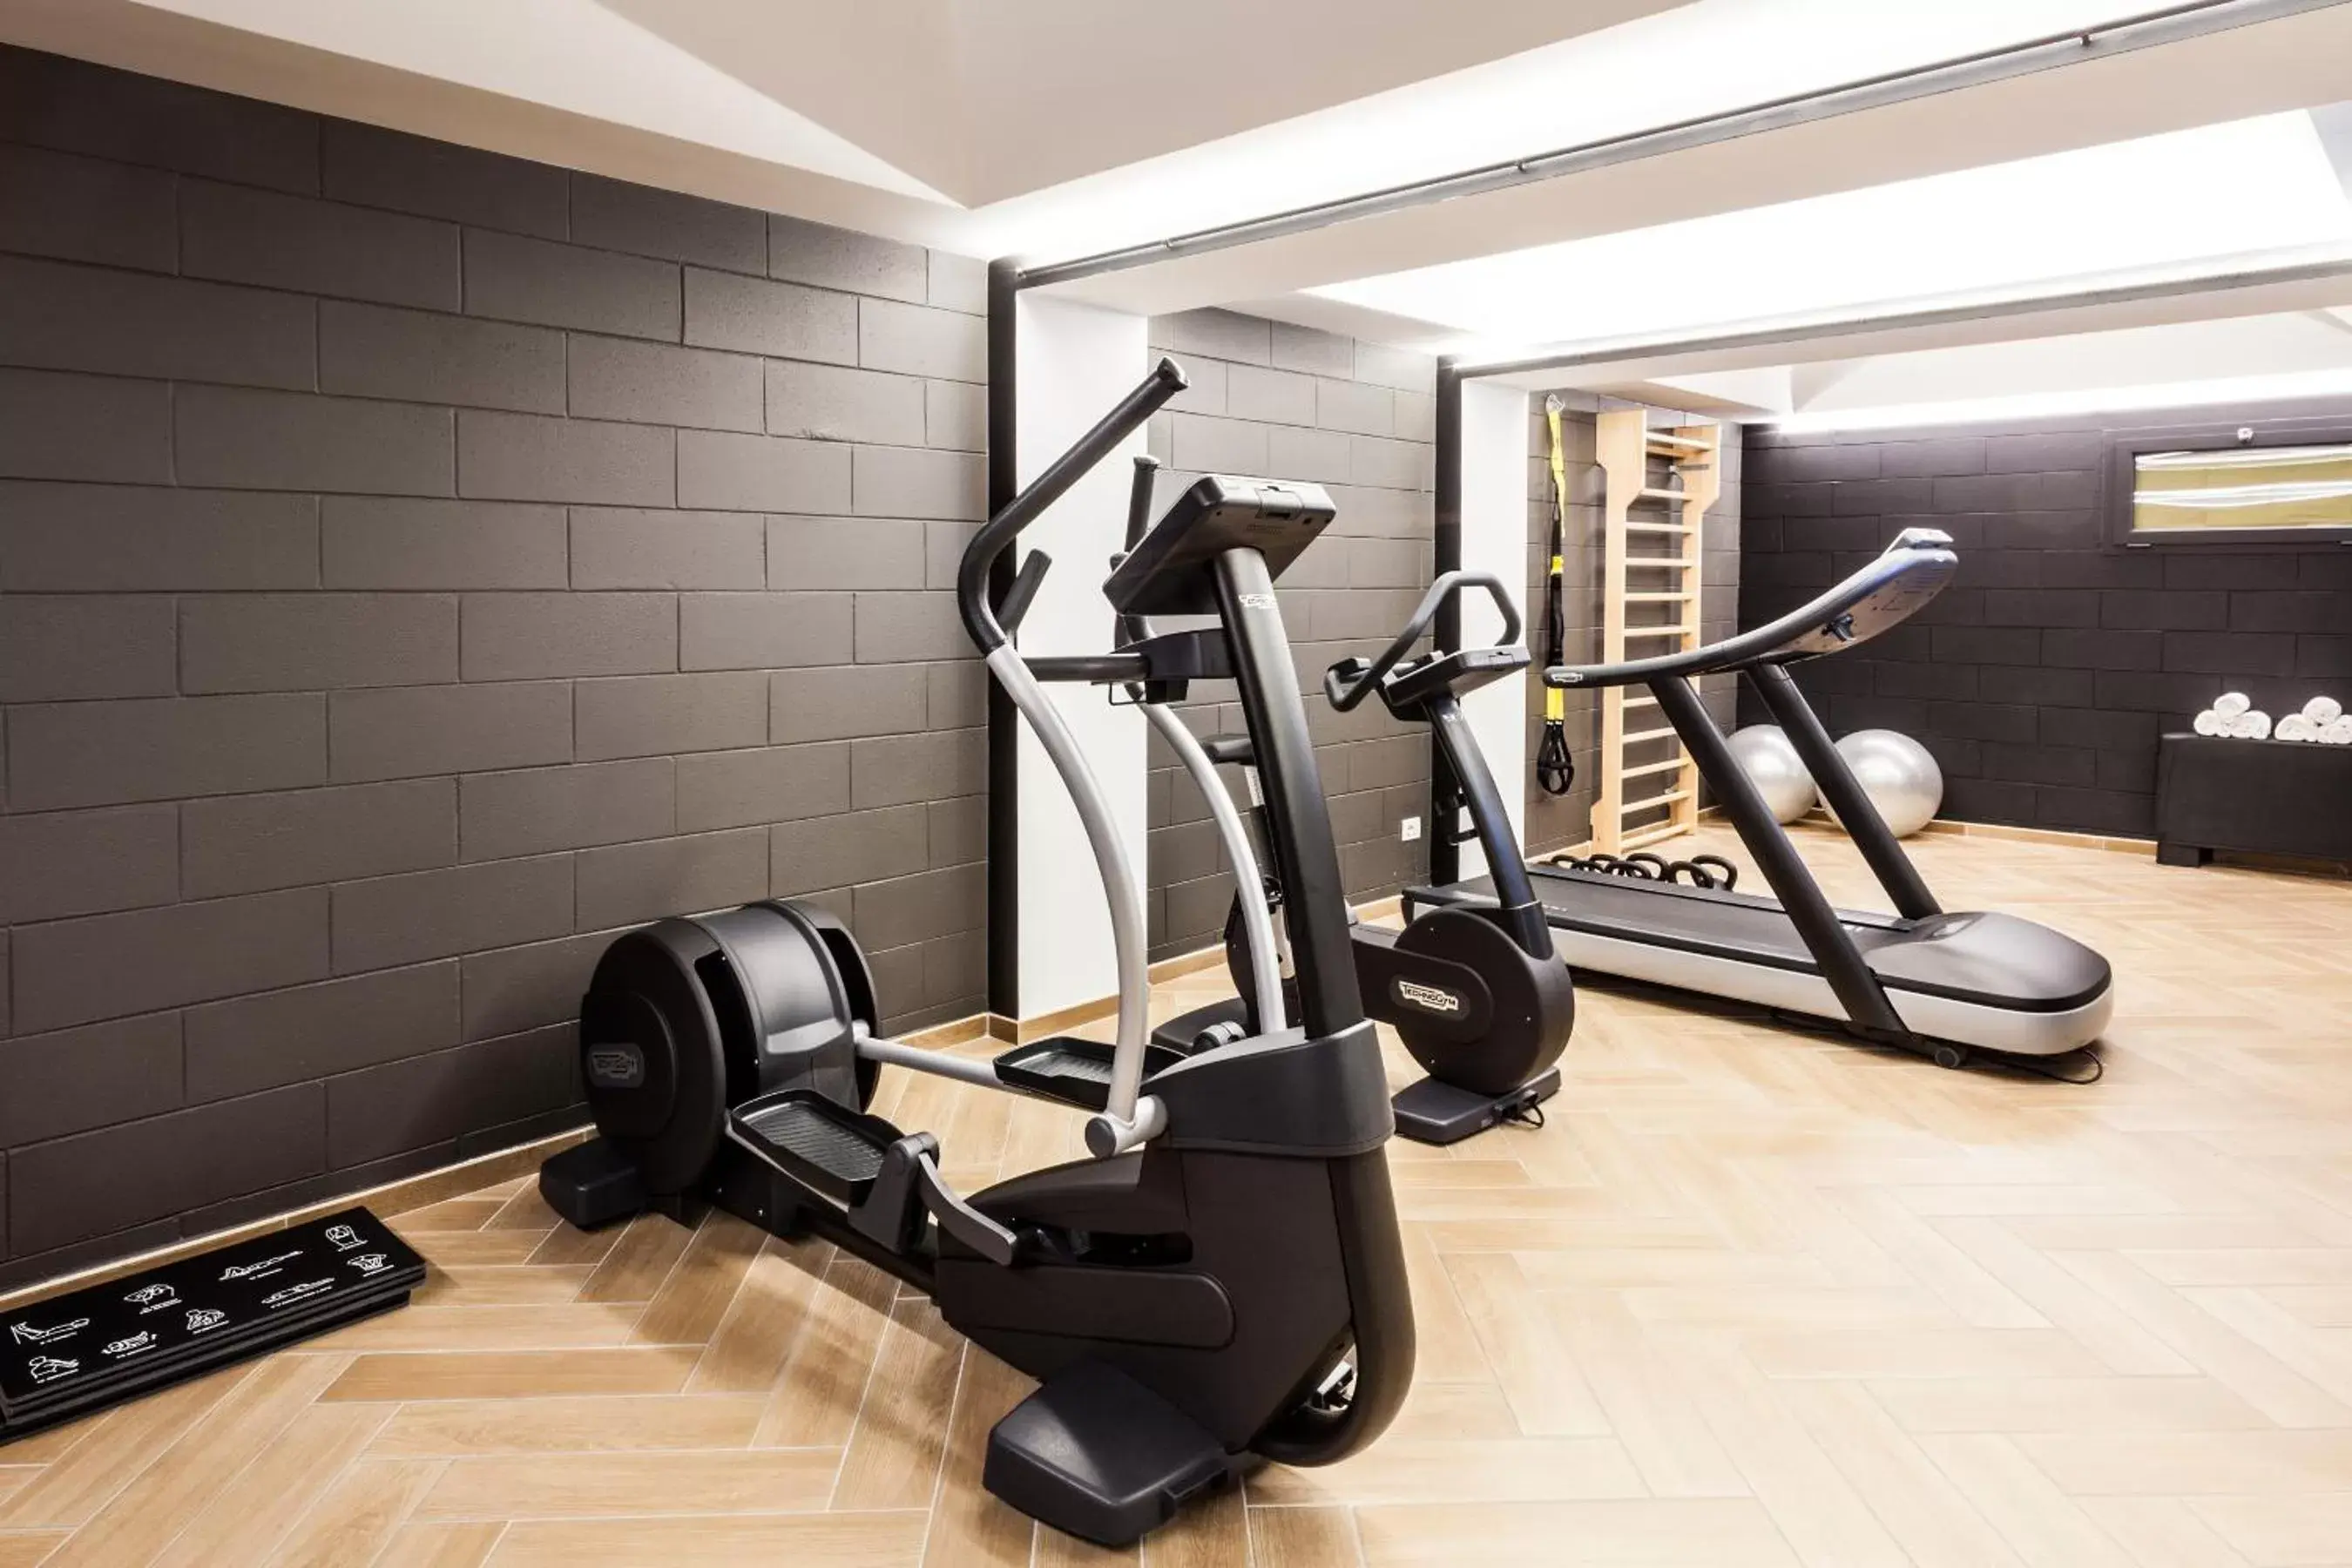 Fitness centre/facilities, Fitness Center/Facilities in Senato Hotel Milano